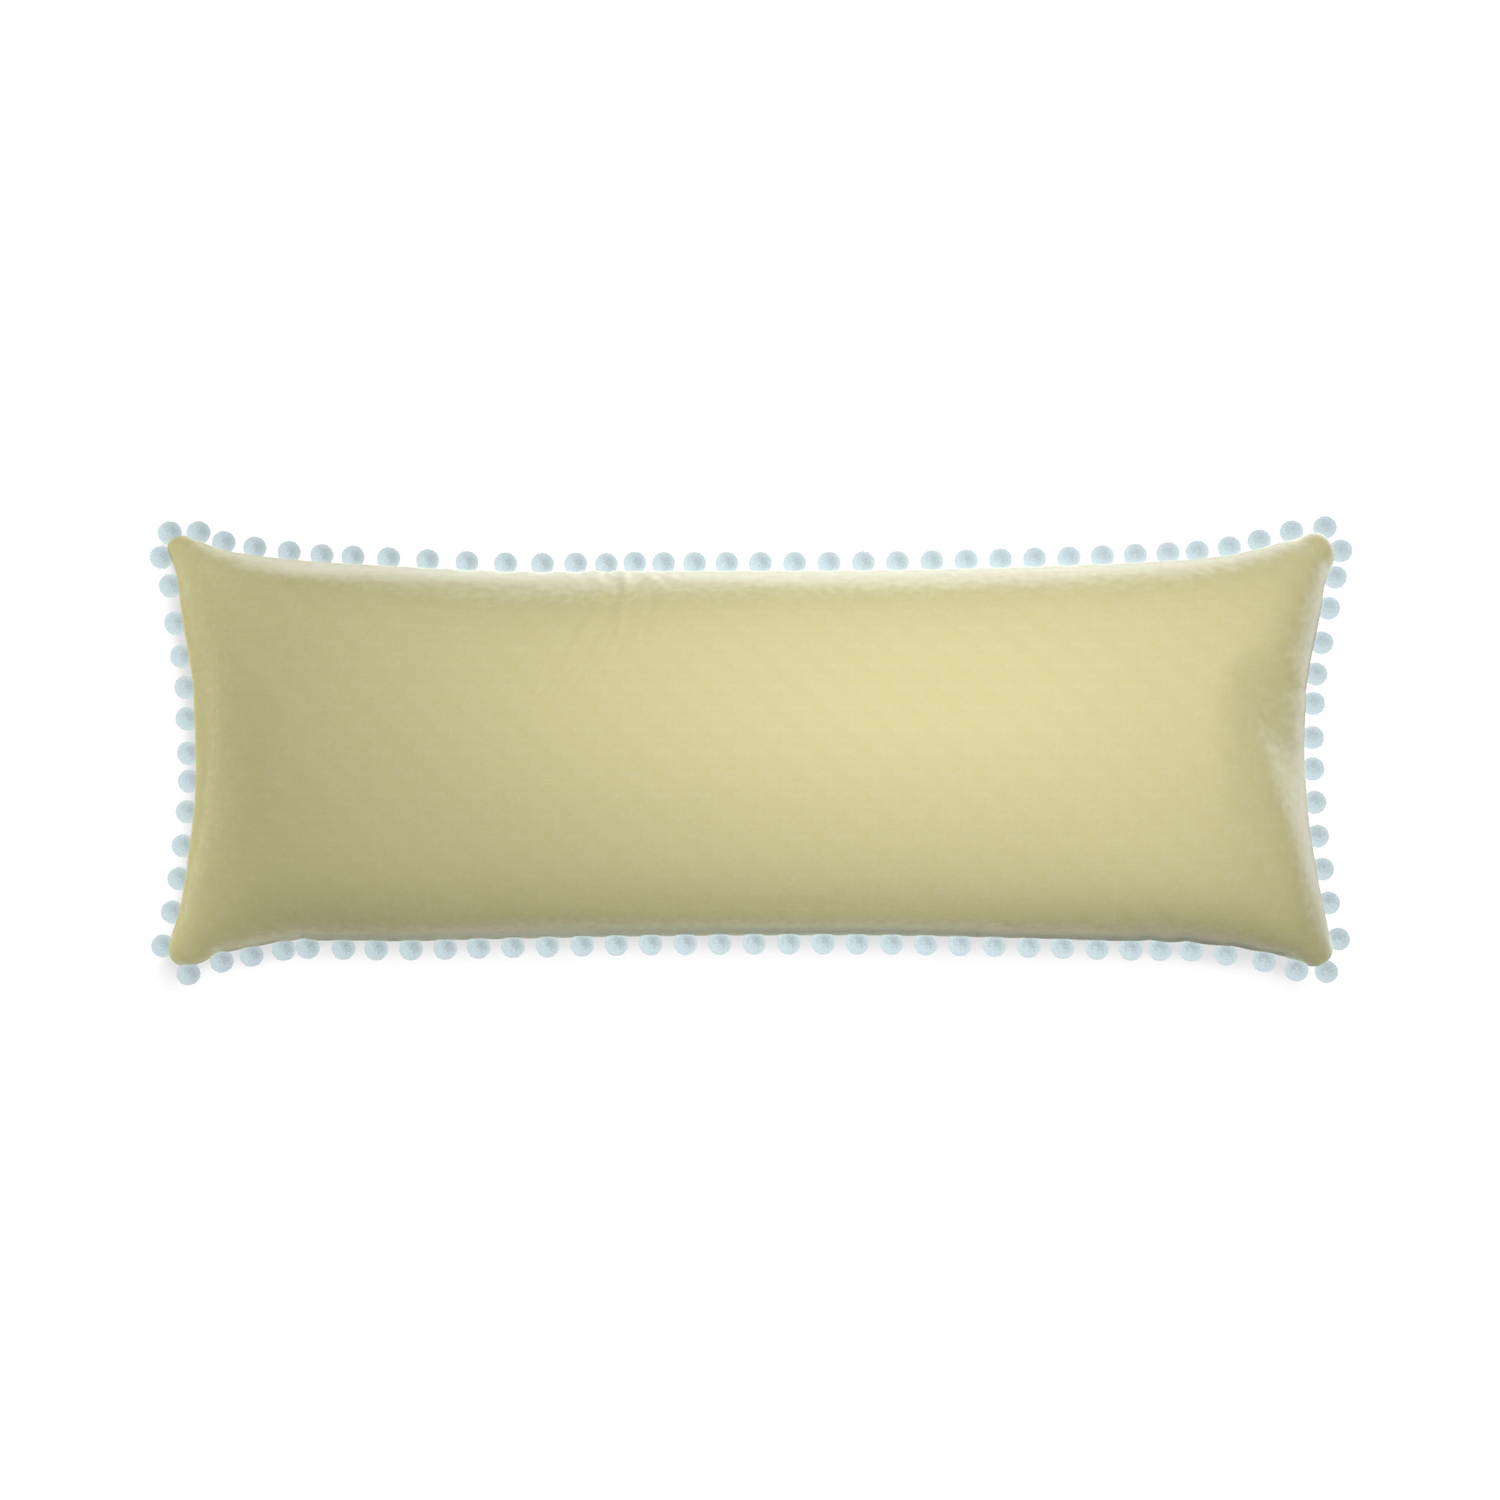 Xl-lumbar pear velvet custom pillow with powder pom pom on white background